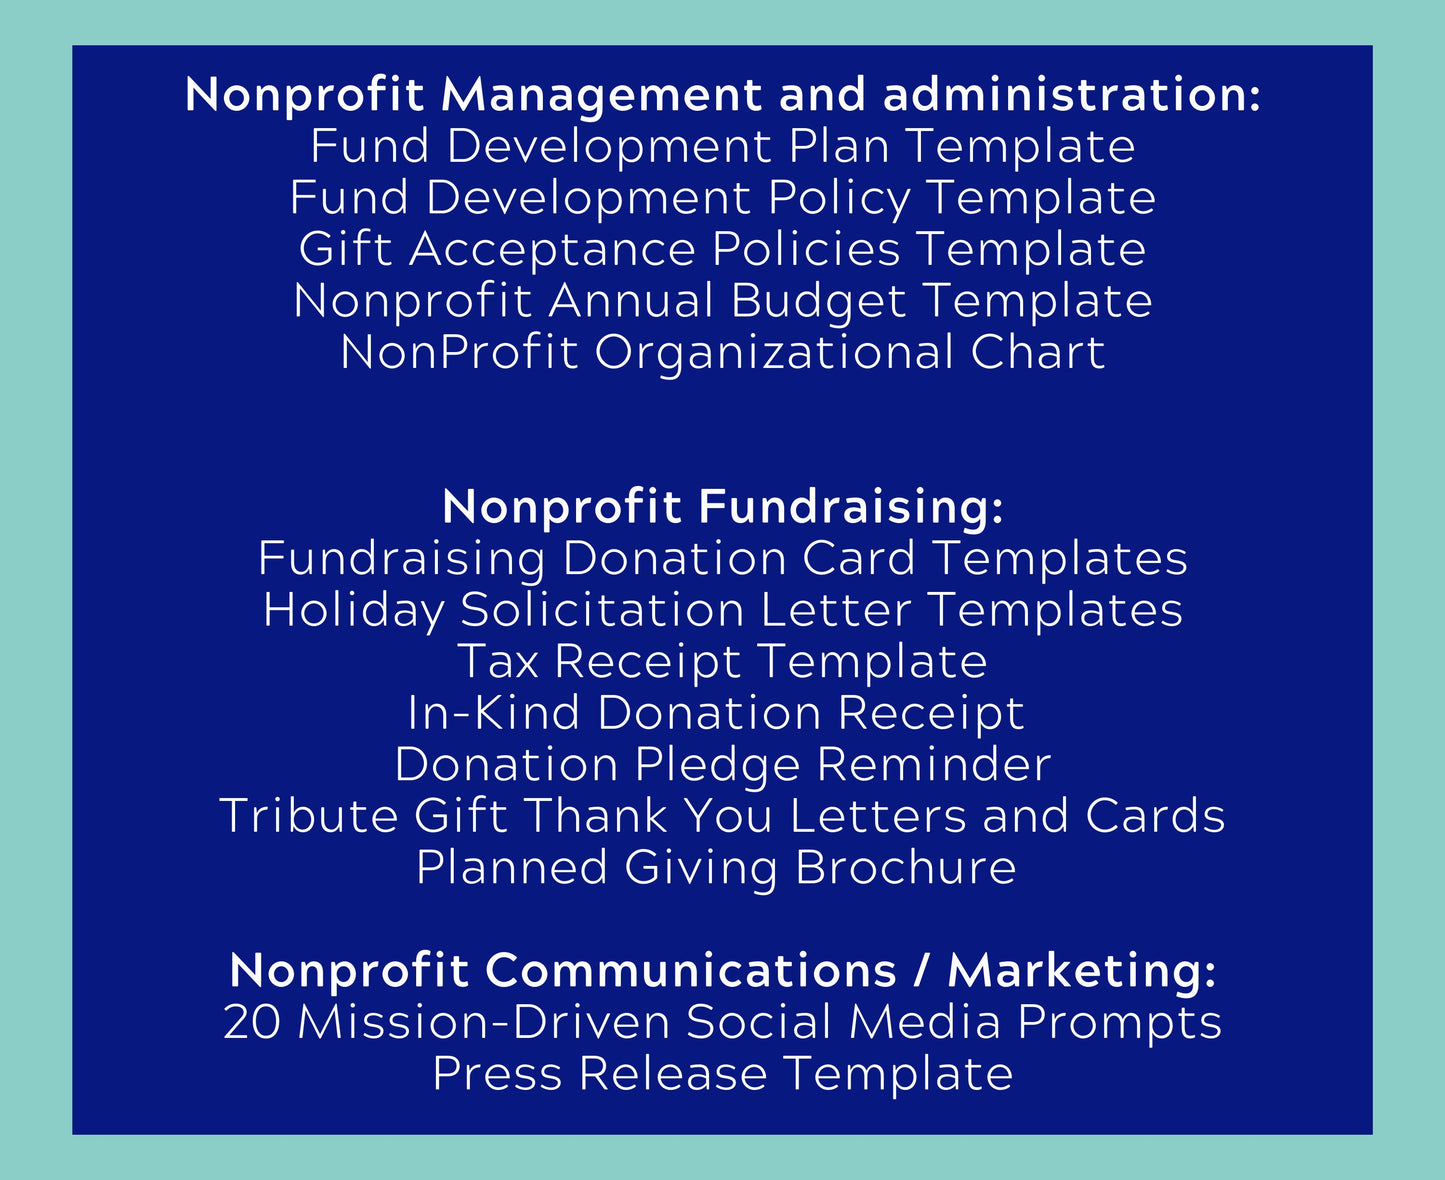 NonProfit Fund Development Essentials Kit